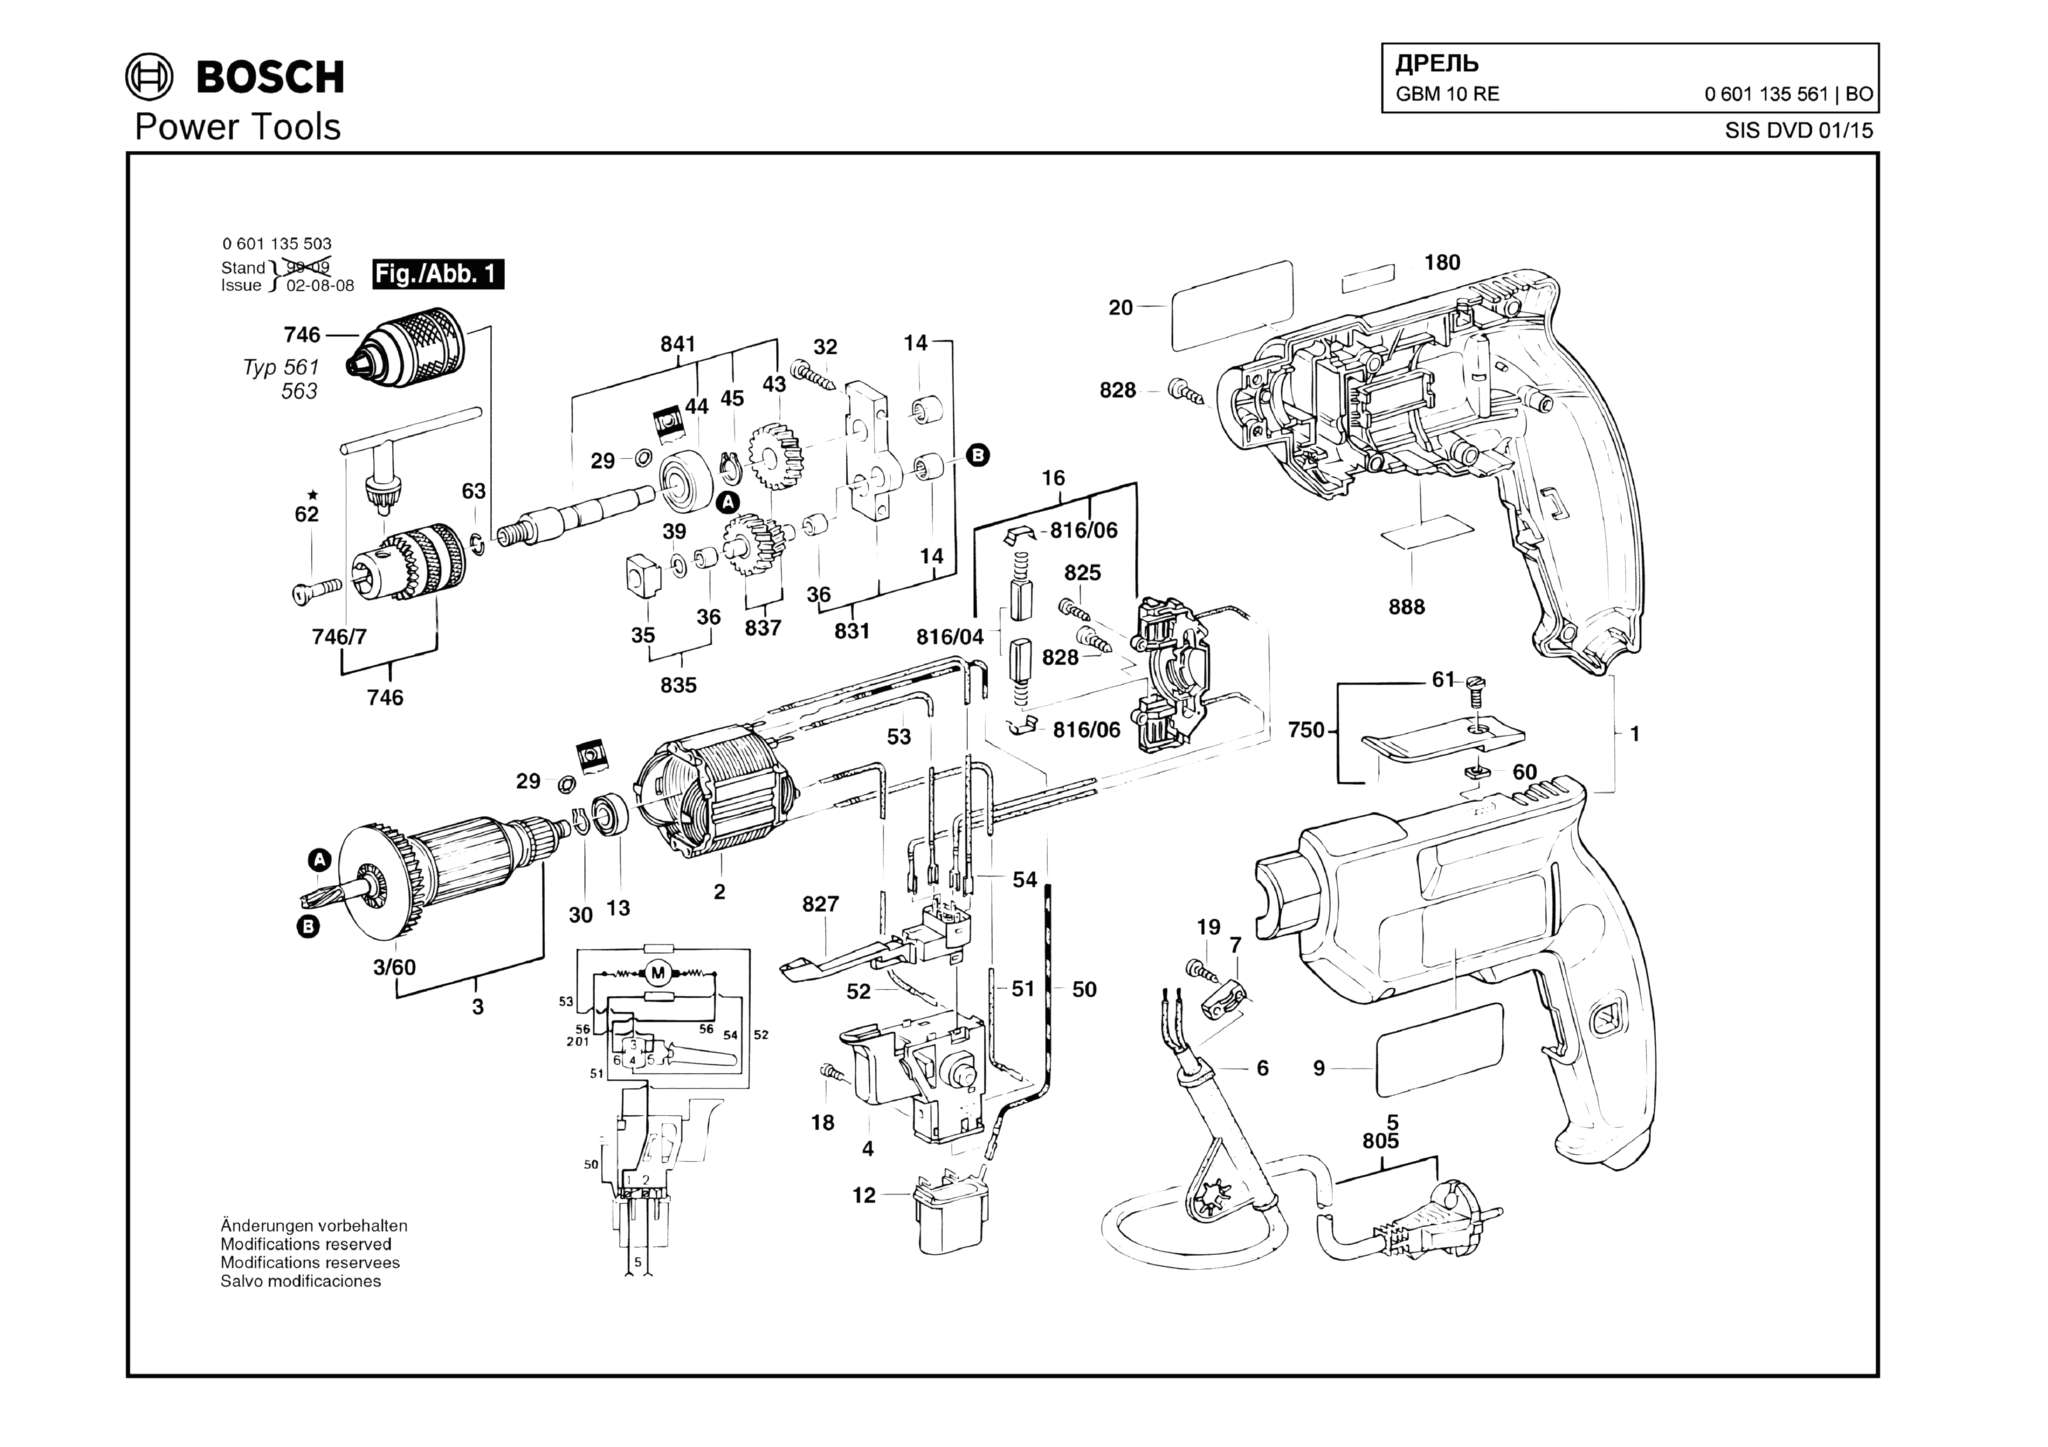 Запчасти, схема и деталировка Bosch GBM 10 RE (ТИП 0601135561)